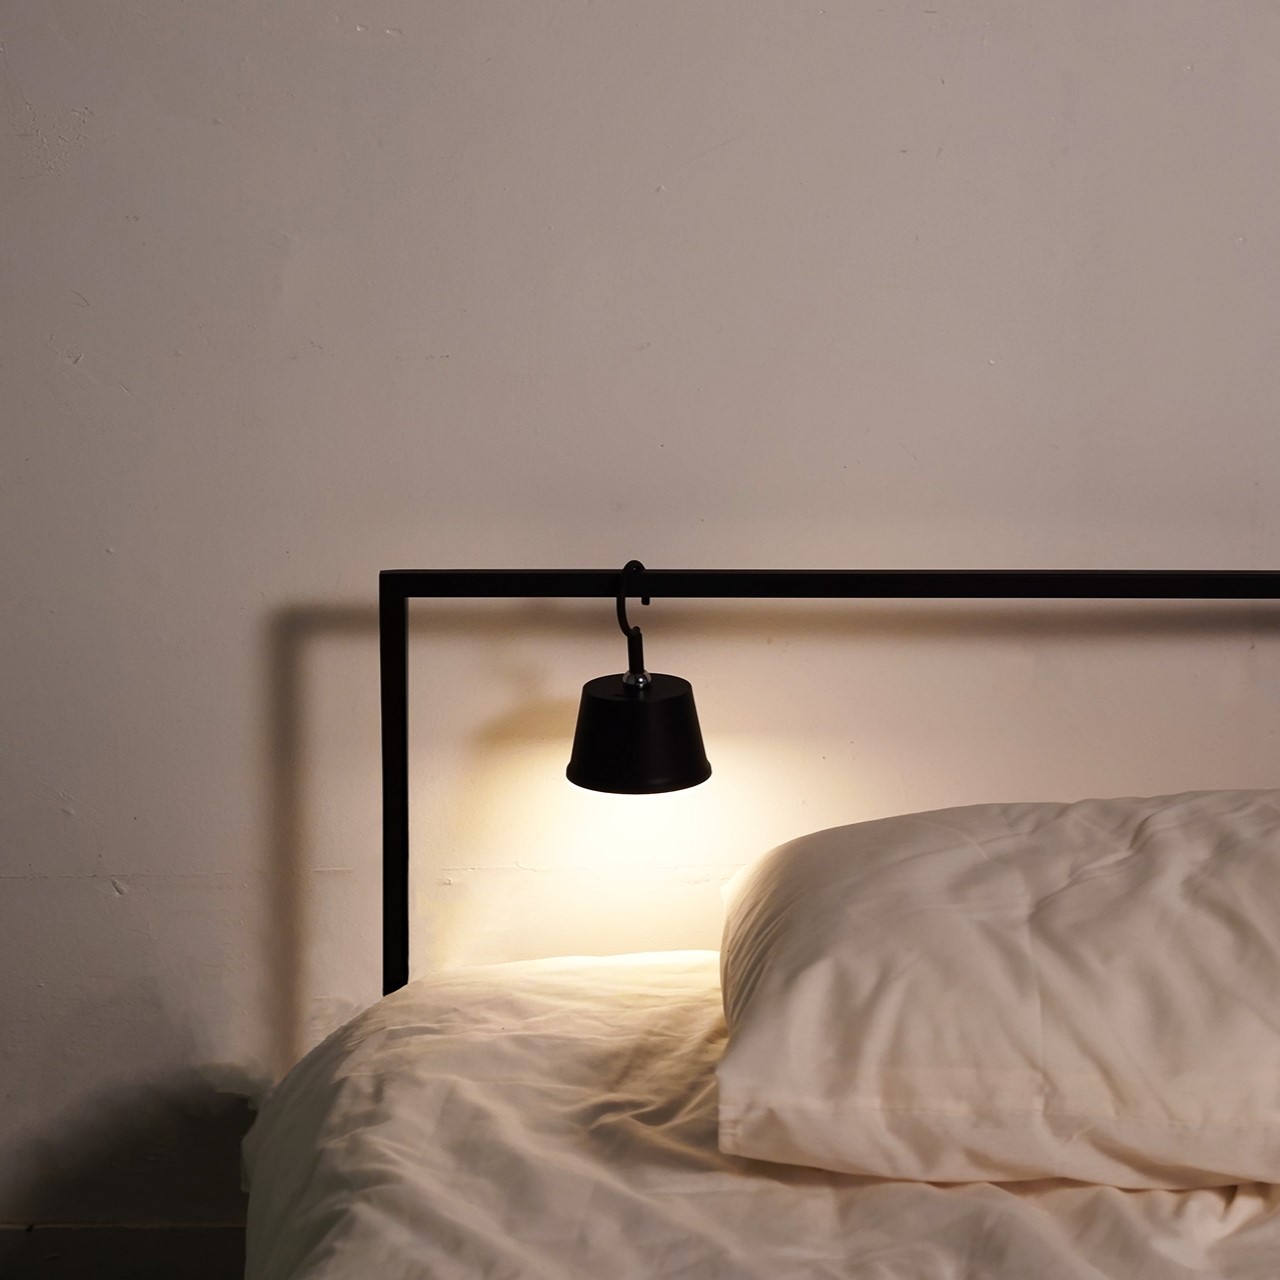 寝室の常夜灯としても活躍。最小光量なら40時間点灯するので災害時にも安心